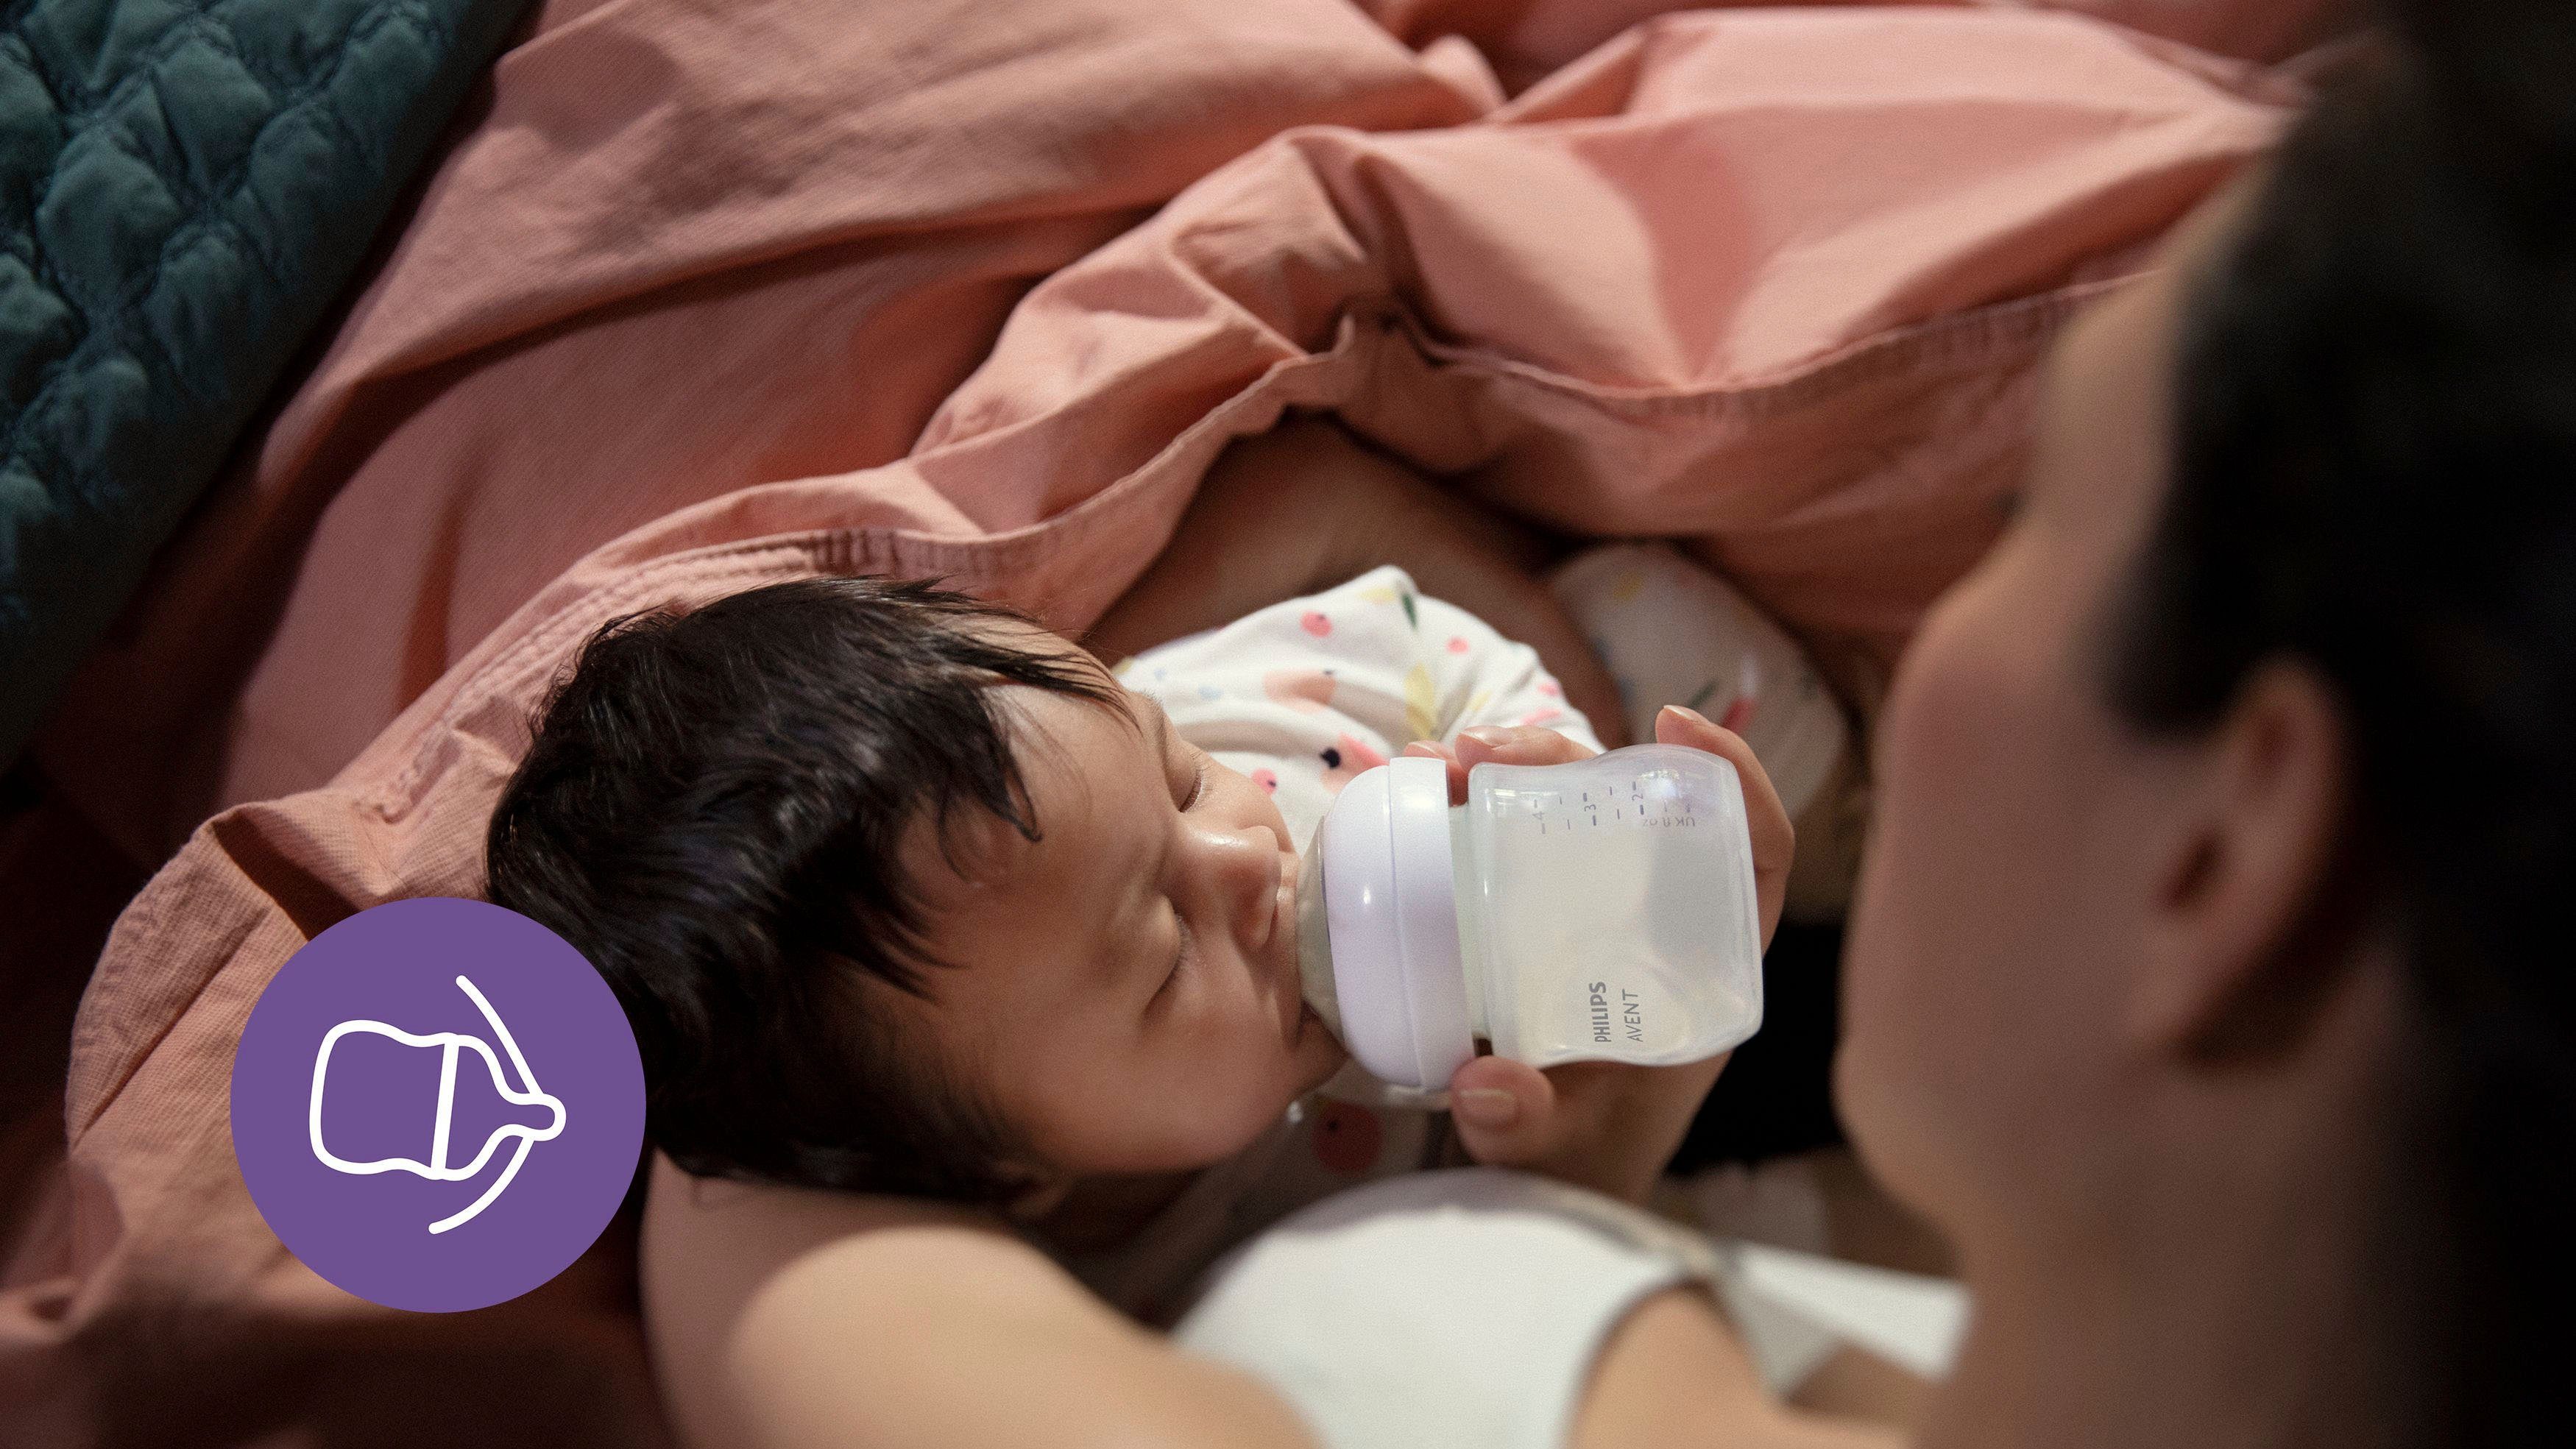 SCD878/11, Schnuller 3 Babyflasche aus AVENT Neugeborene Response soft Starter-Set Philips ultra Flaschen und Natural Glas Glas für